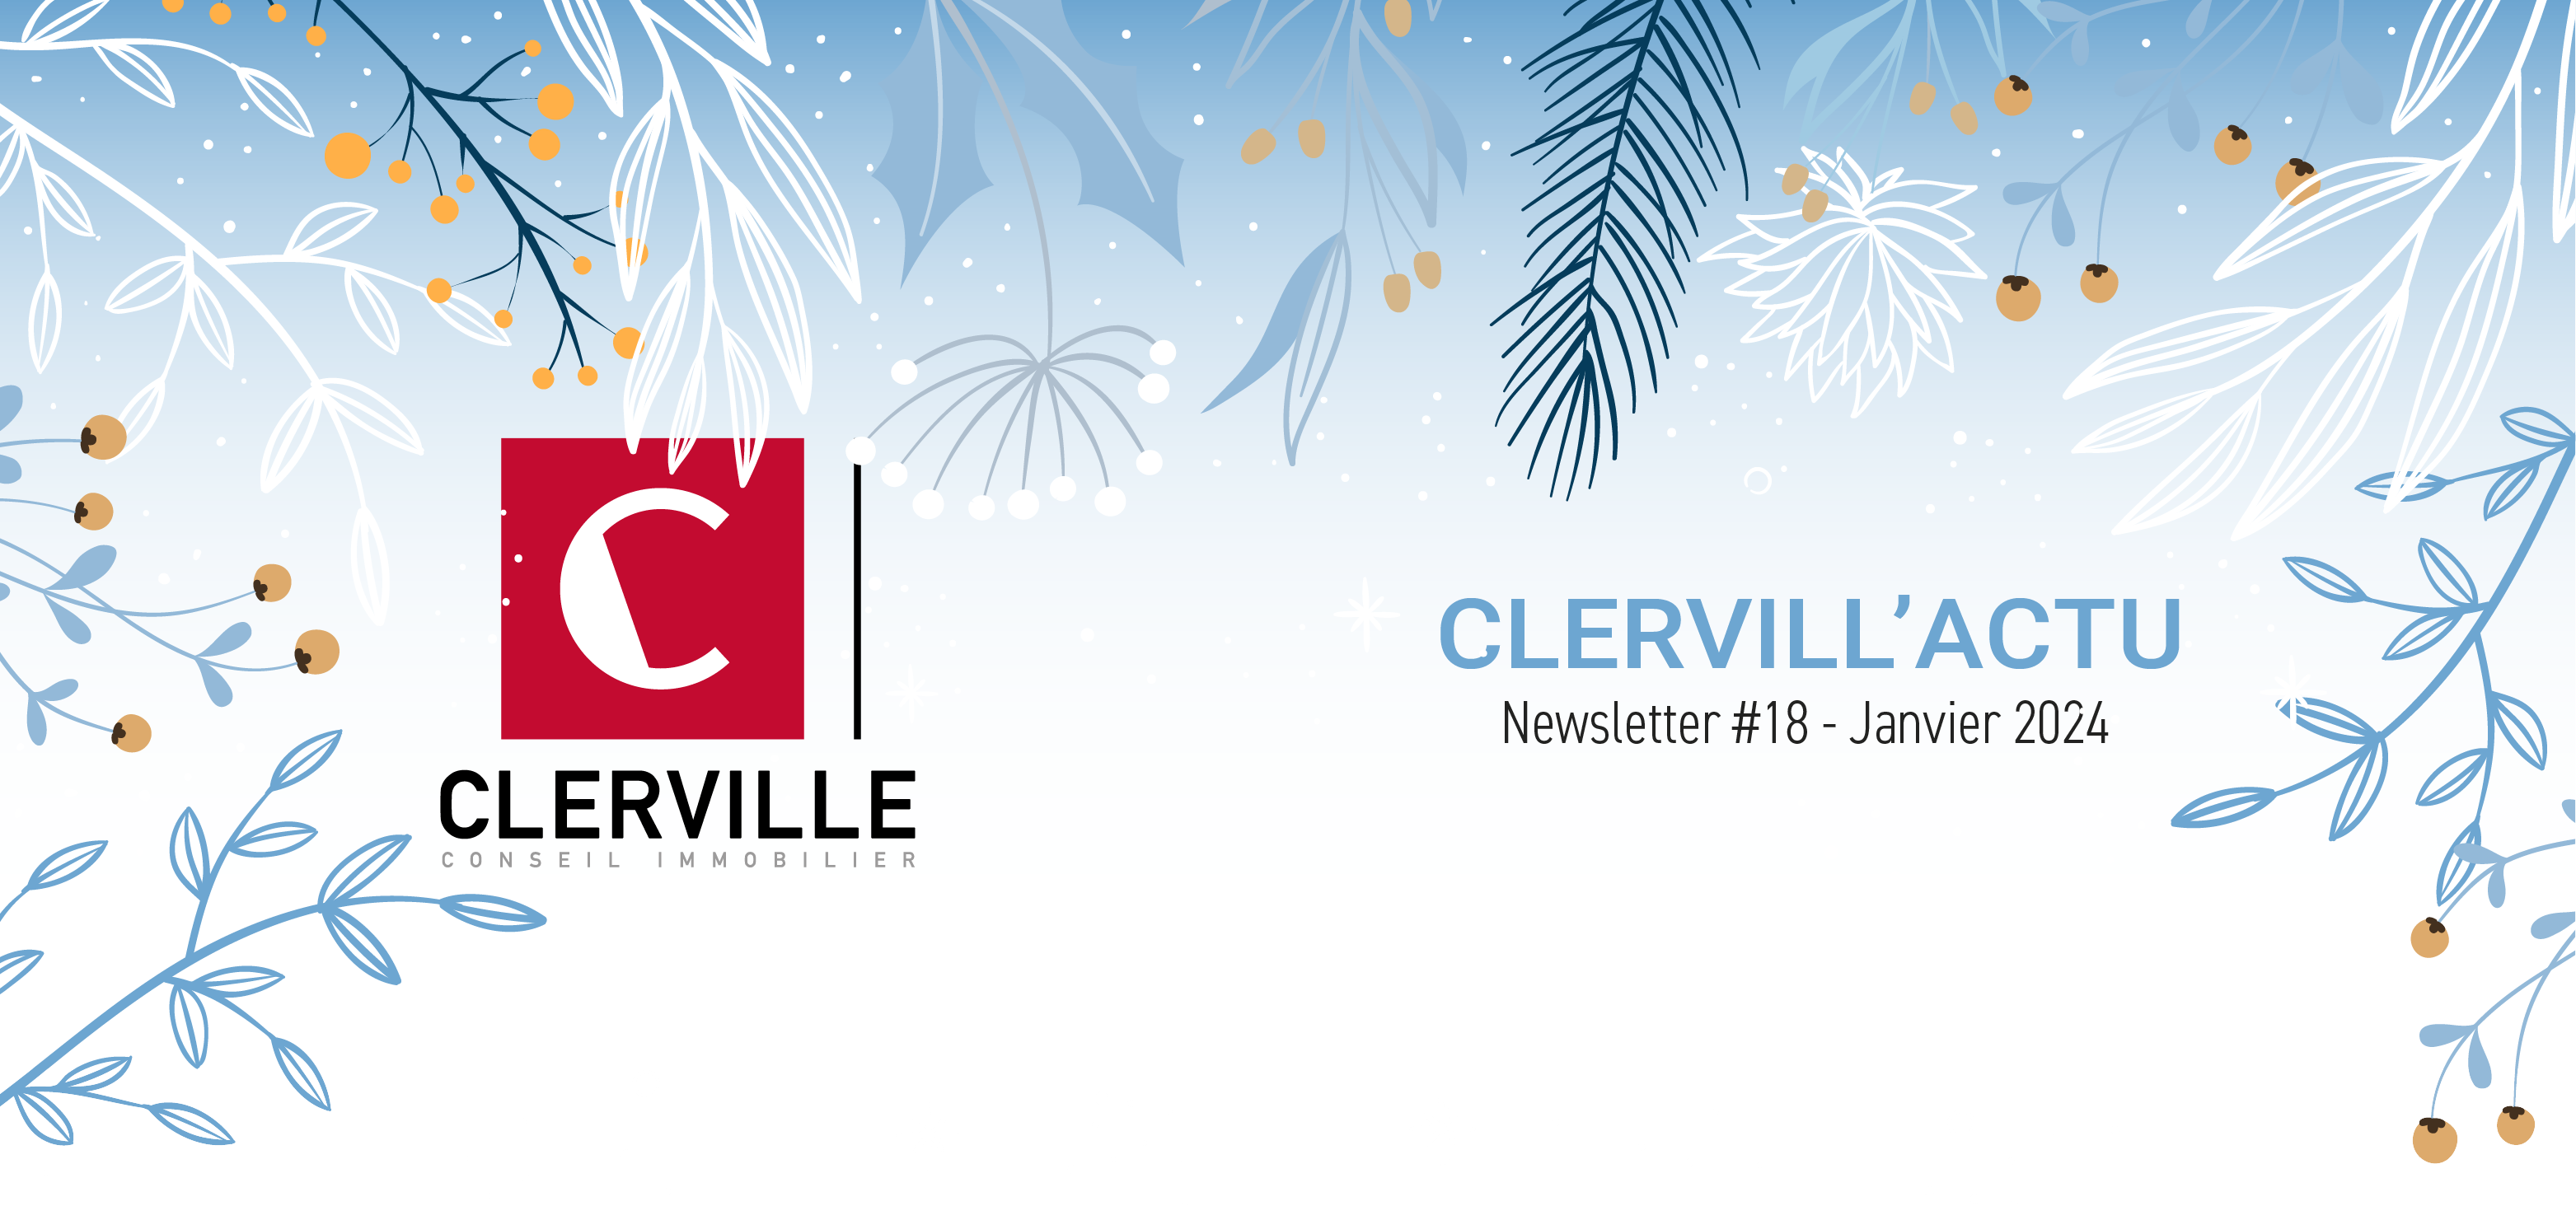 Newsletter Clerville #19 - Janvier 2024